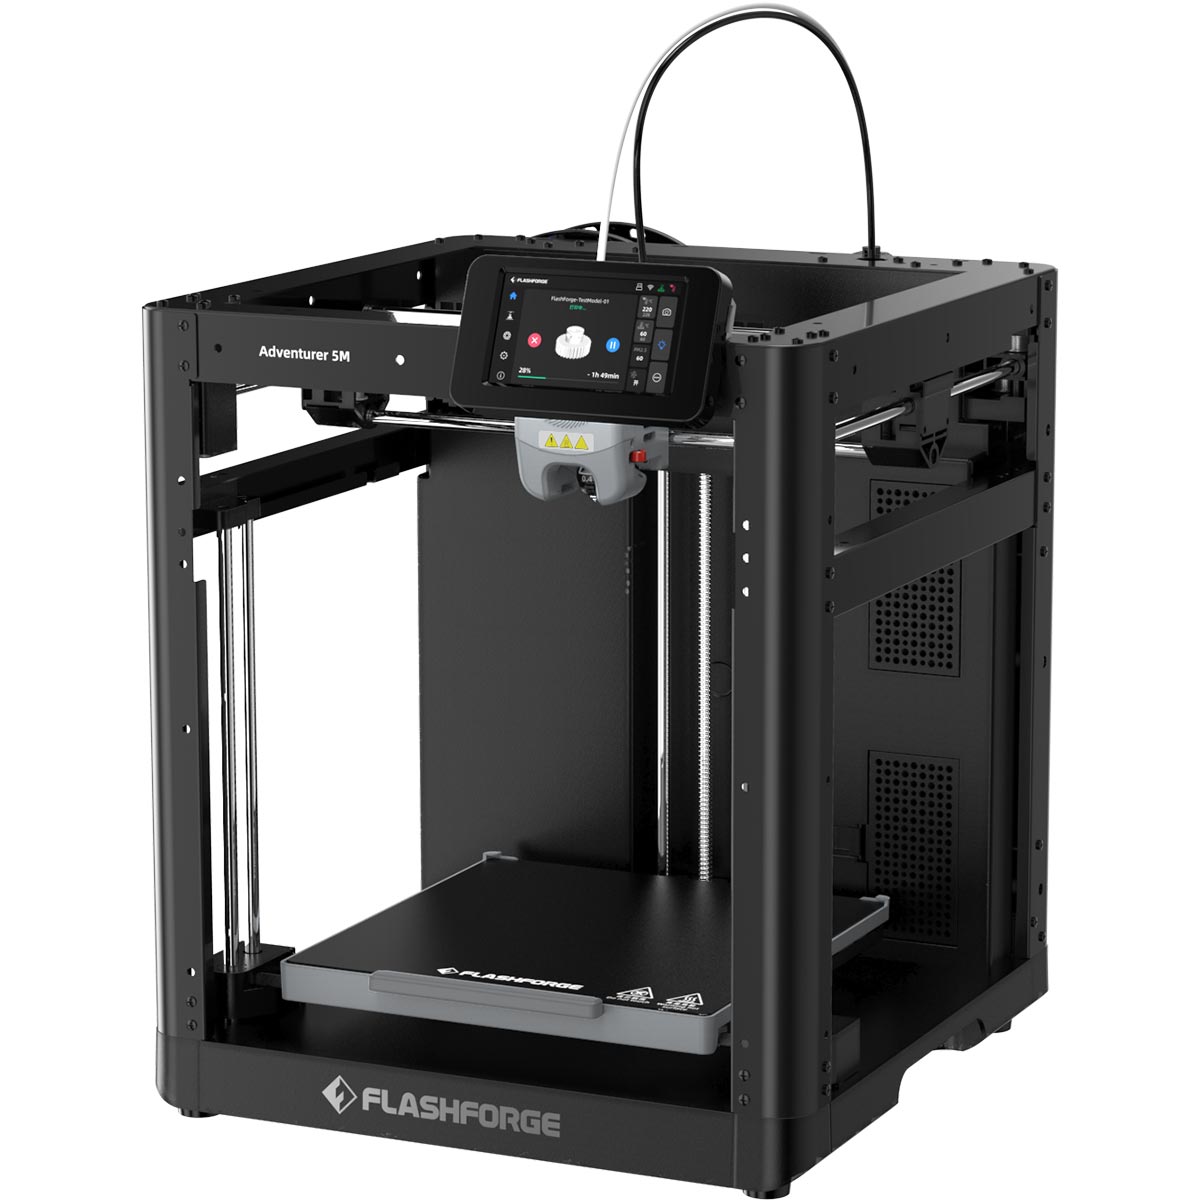 Acheter imprimante 3D en Suisse - Livraison gratuite - A-Printer